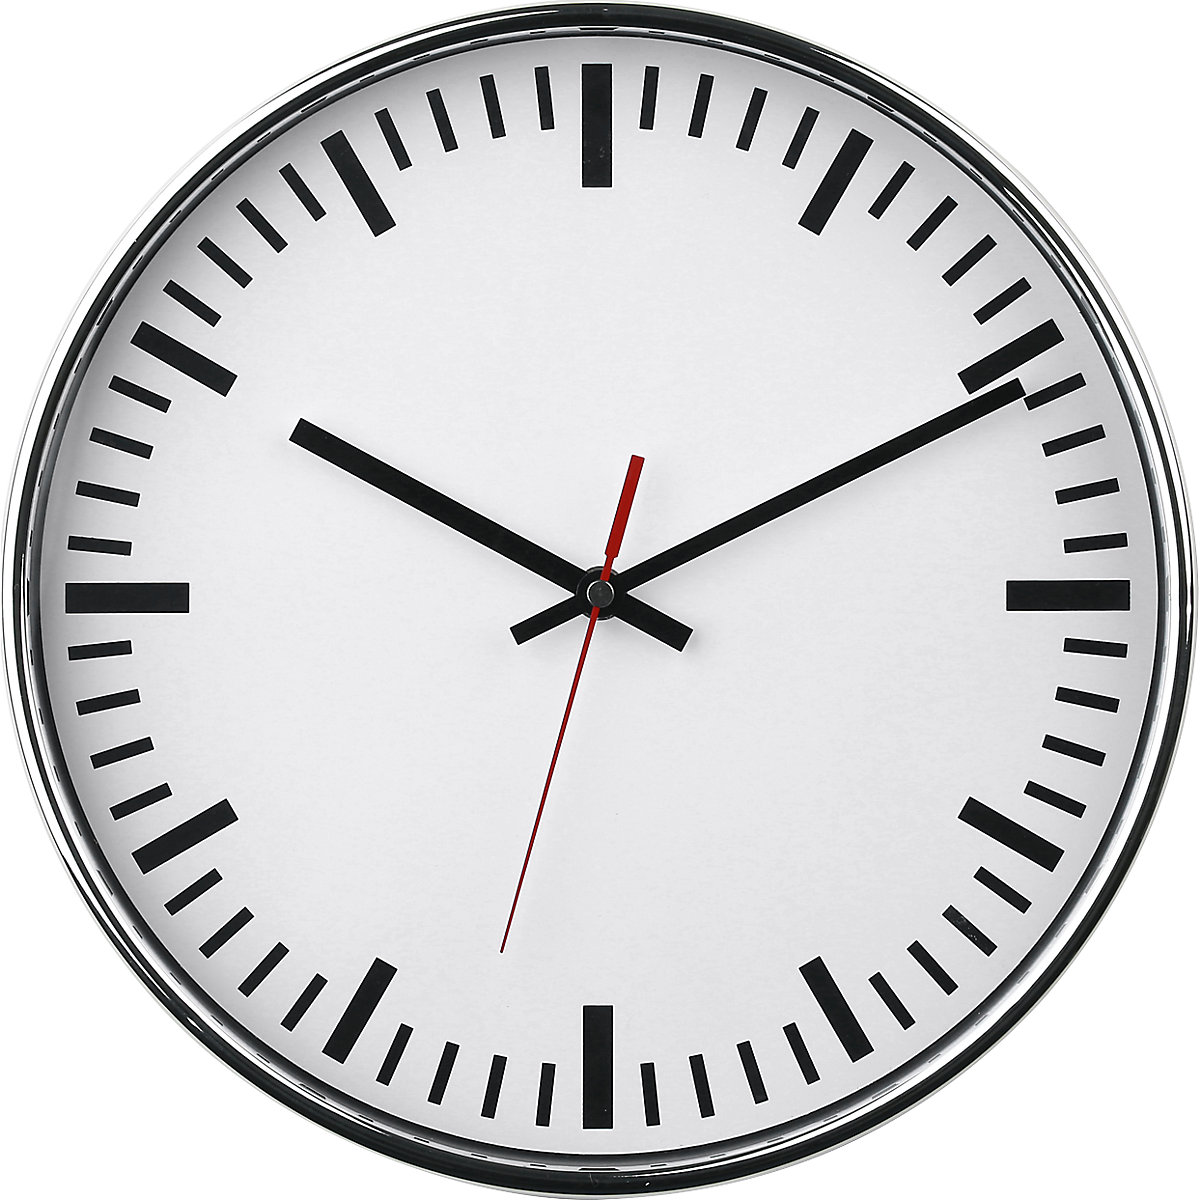 Nástěnné hodiny, Ø 300 mm, hodiny s mechanismem Quartz, bílý číselník, s proužky